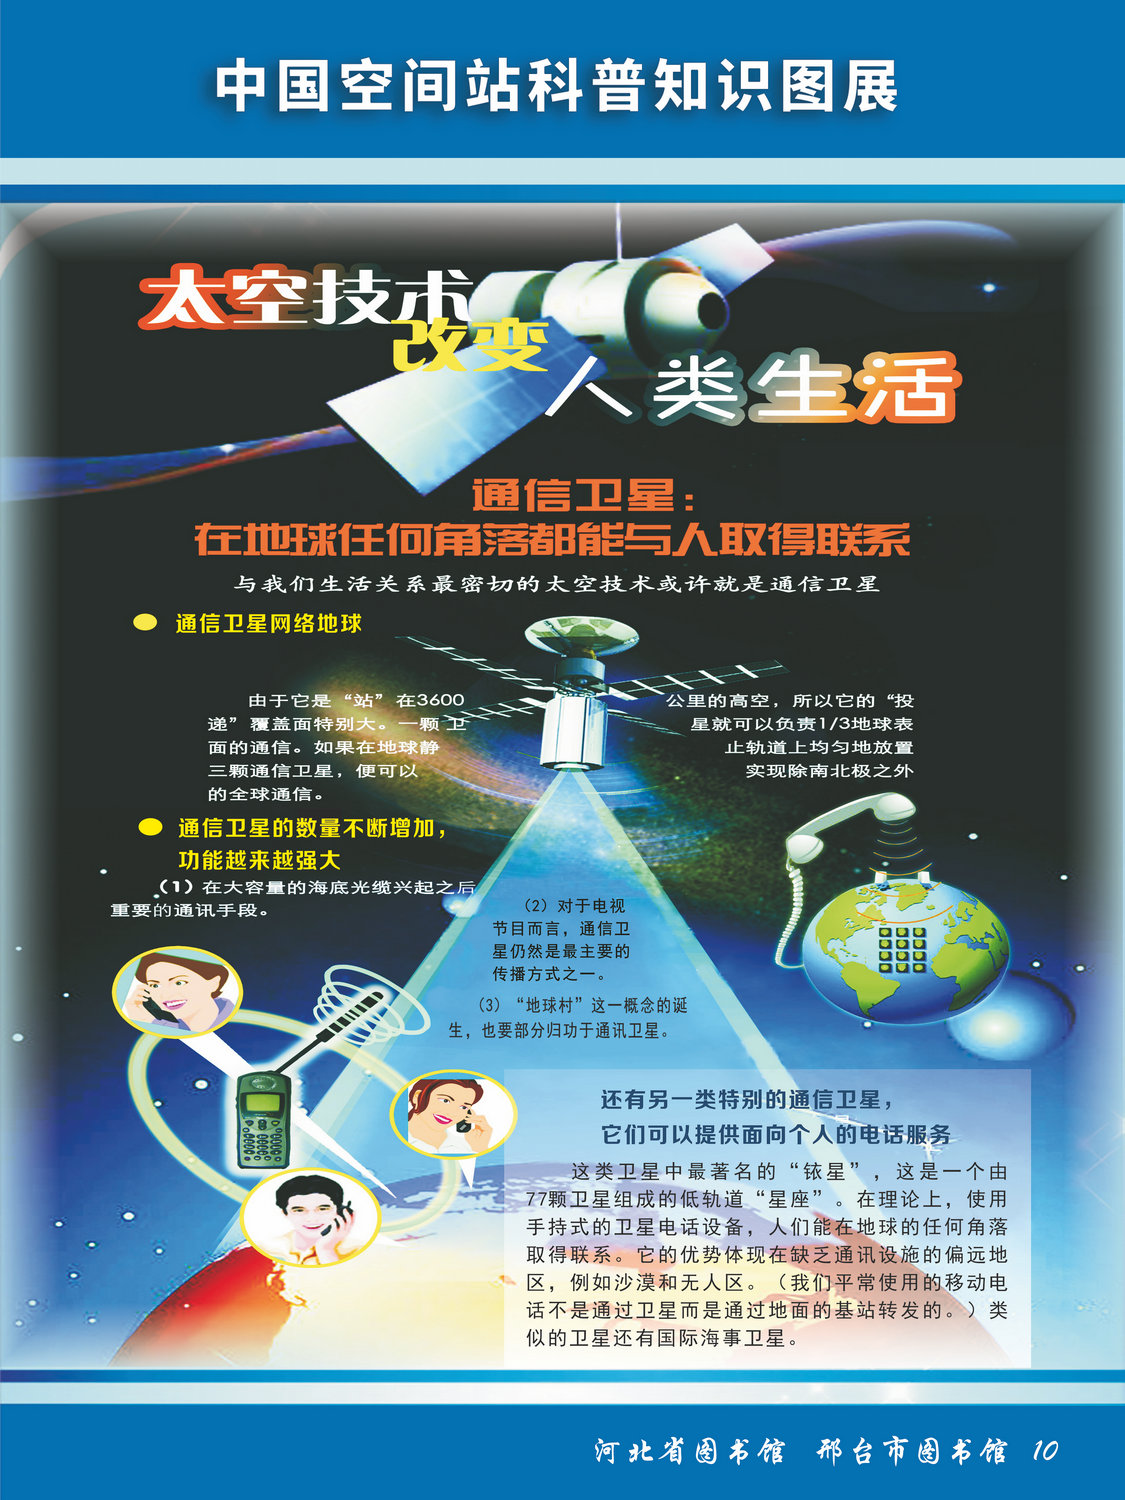 中国空间站科普知识图文展_图10